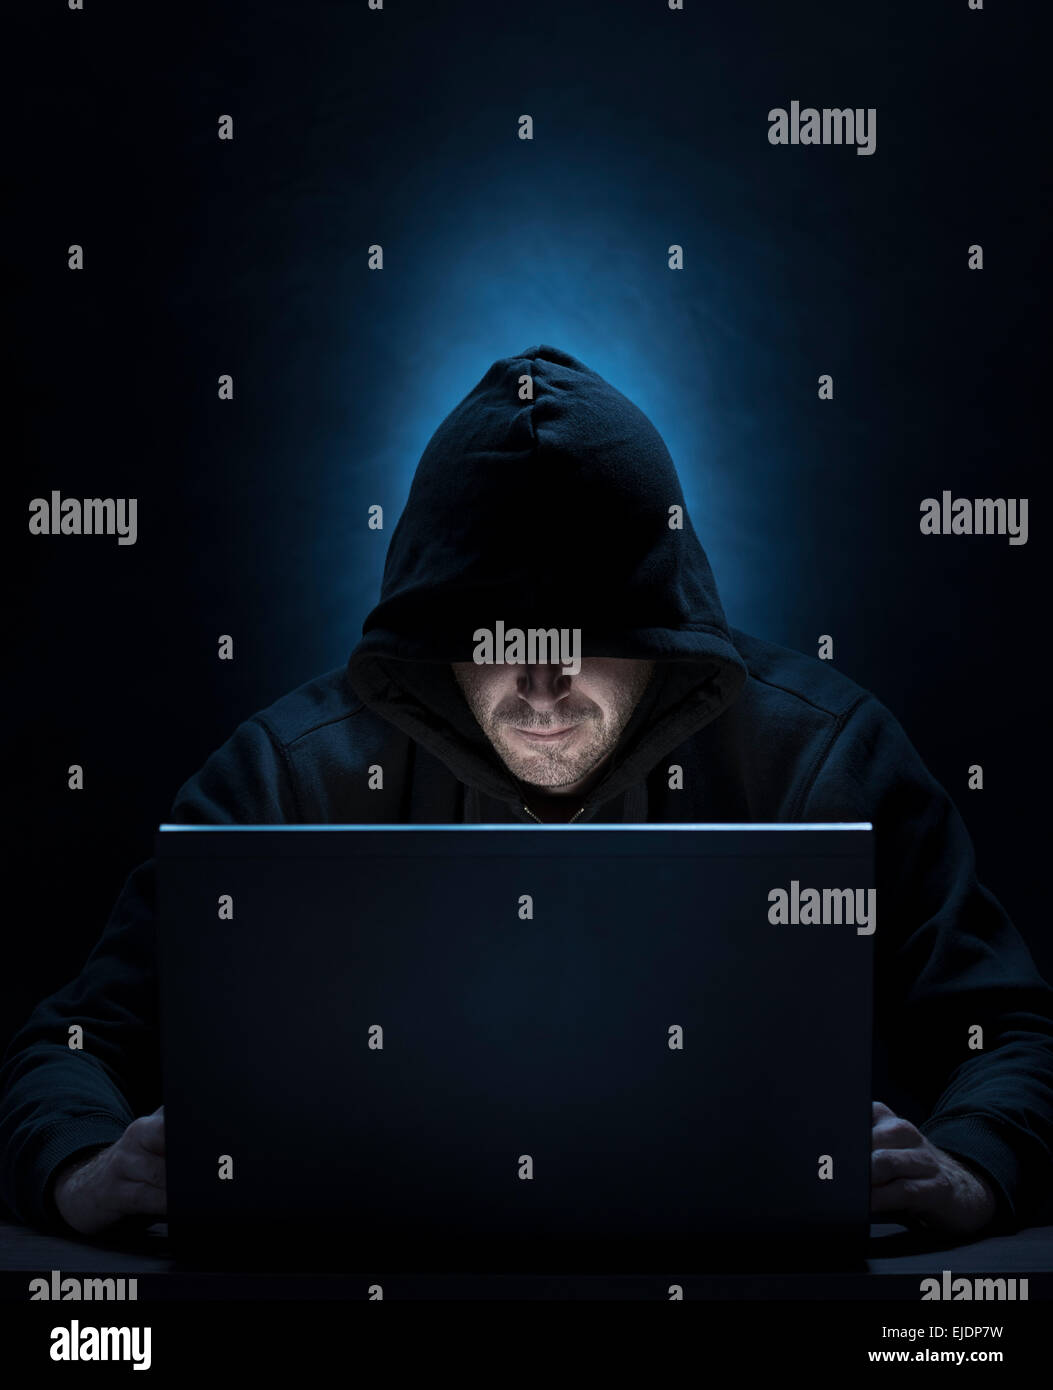 Hombre encapuchado en el equipo, para hackear,espiar,internet temas de seguridad Foto de stock